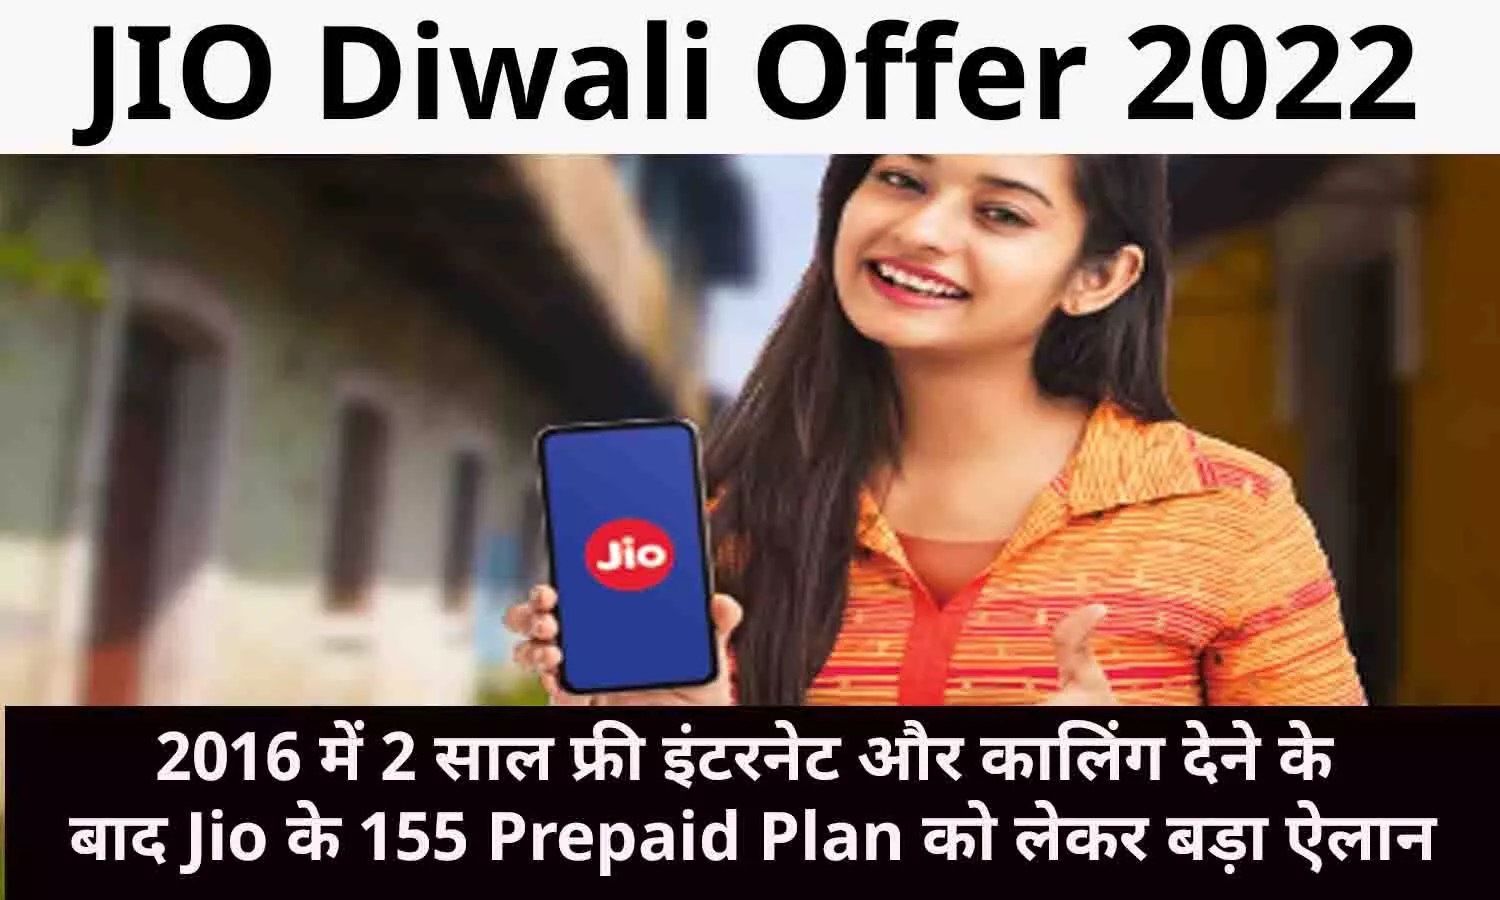 JIO Diwali Offer 2022: 2016 में 2 साल फ्री इंटरनेट और कालिंग देने के बाद Jio के 155 Prepaid Plan को लेकर बड़ा ऐलान, फटाफट पढ़े